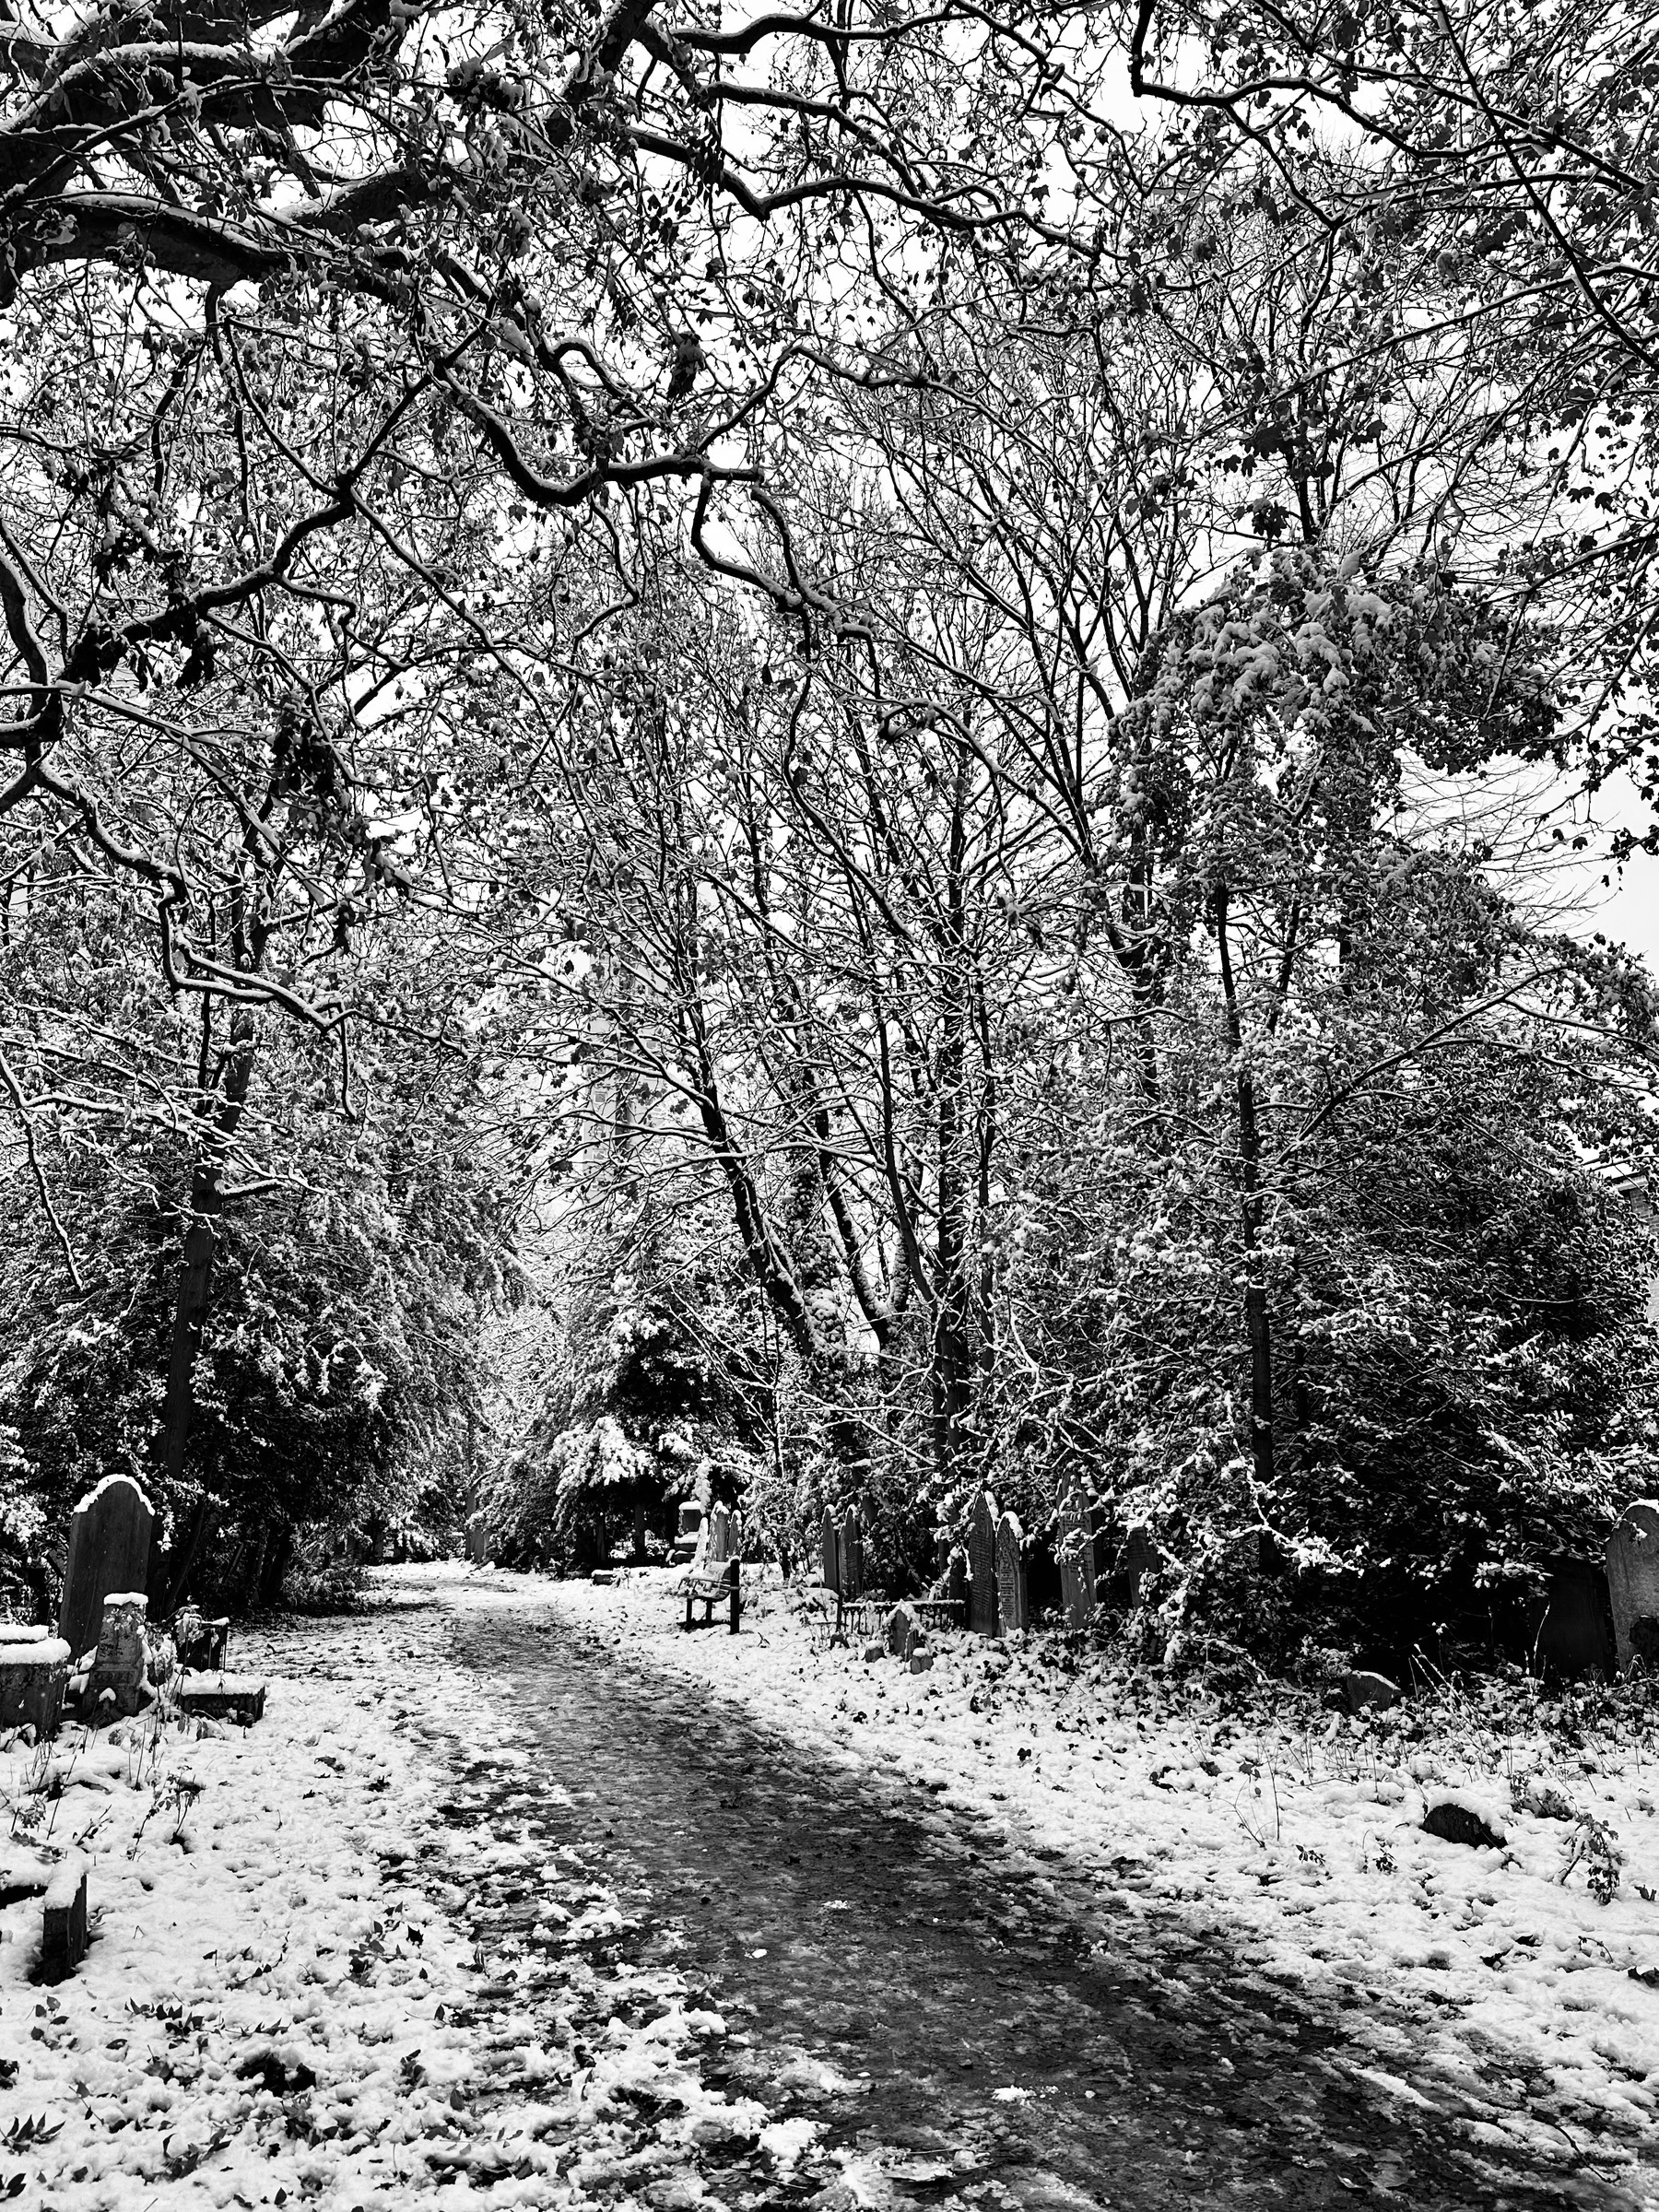 A path through a snowy cemetery.